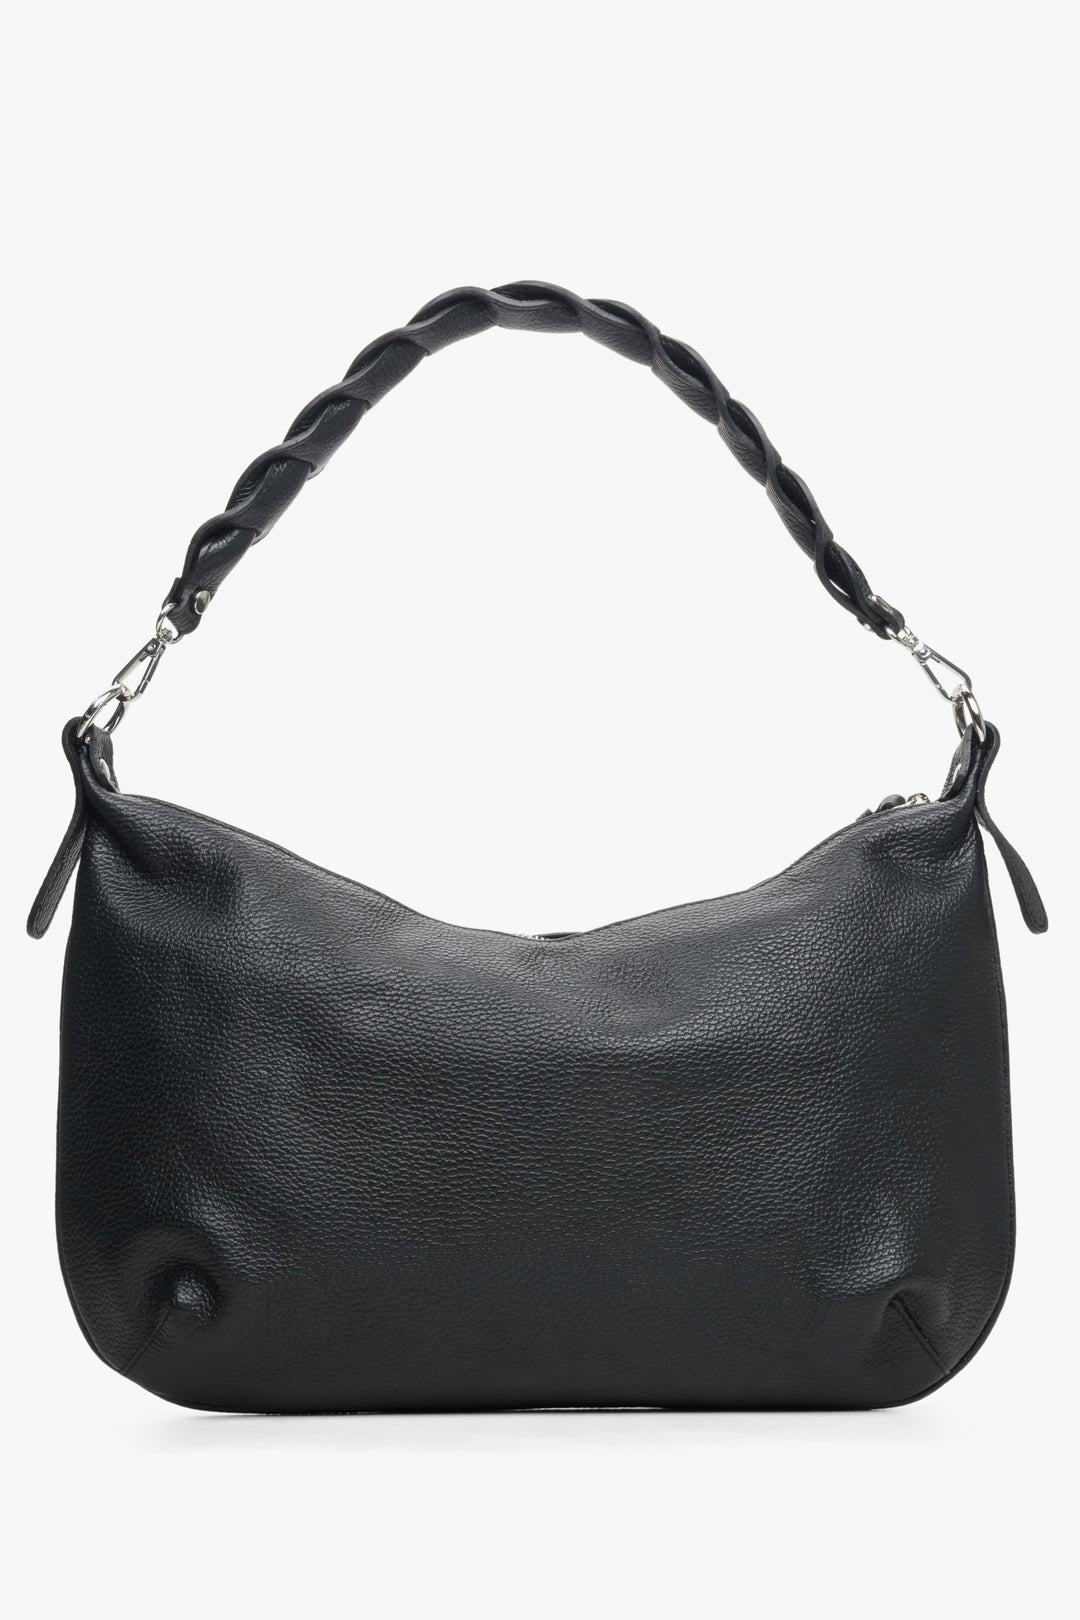 Estro women's shoulder bag hand sewn in Italy, black color.